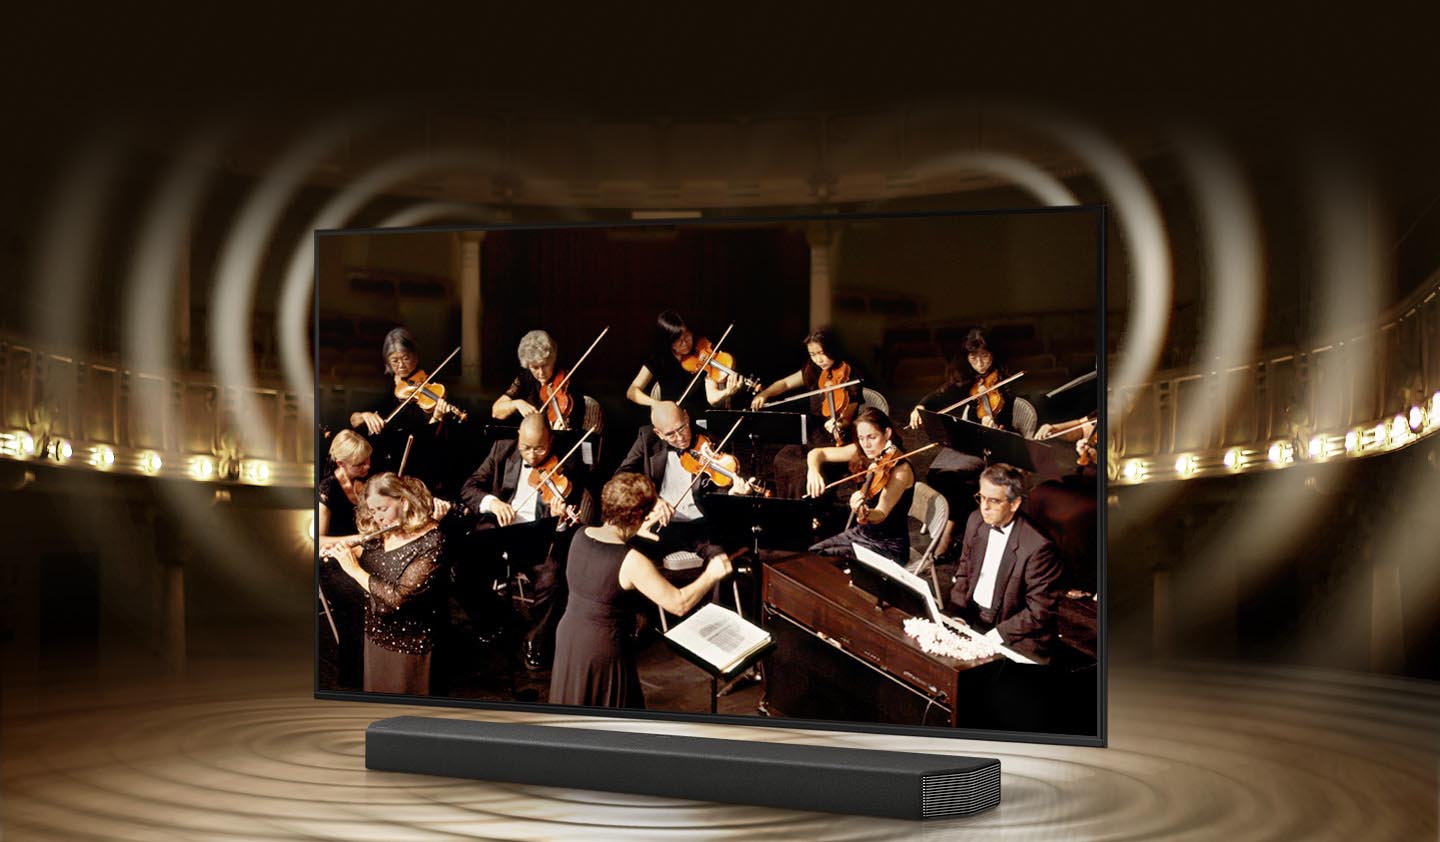 پخش صدای هماهنگ از ساندبار و تلویزیون 65AU8000 با قابلیت Q Symphony